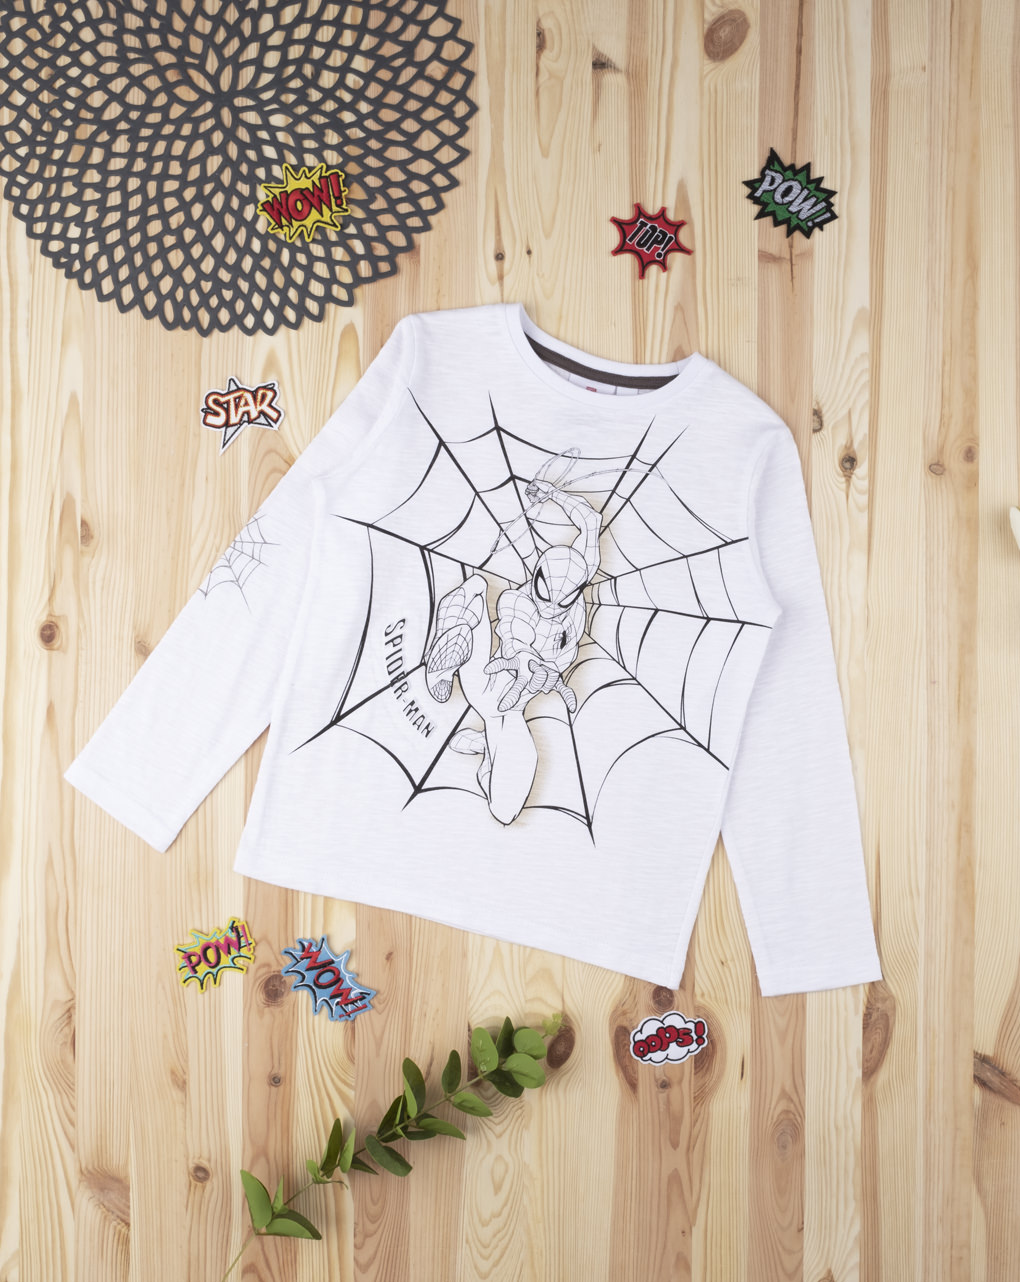 παιδική βαμβακερή μπλούζα άσπρη με τον spiderman